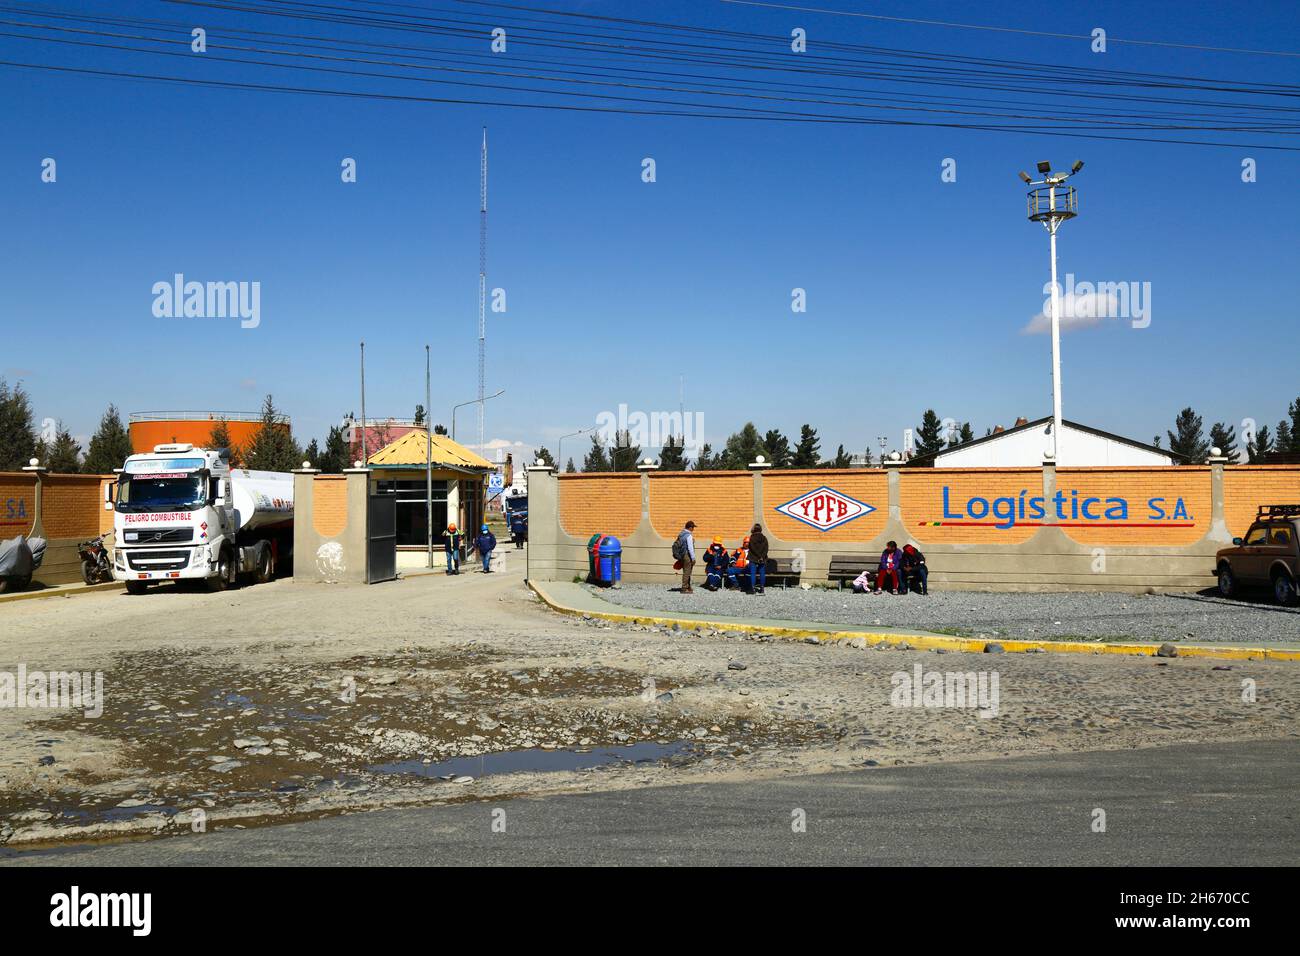 Senkata, El Alto, Bolivien. 13.. November 2021. Ein Tankwagen verlässt das Kraftstoffwerk Senkata auf der Av 6 de Marzo / Camino Oruro in El Alto. Yacimientos Petrolíferos Fiscales Bolivianos (YPFB, Boliviens staatliches Erdöl-/Kohlenwasserstoffunternehmen) verfügt hier über eine große Raffinerie und Lageranlage, die La Paz, El Alto und die Umgebung mit Benzin, Diesel und flüssigem Erdgas versorgt. Stockfoto